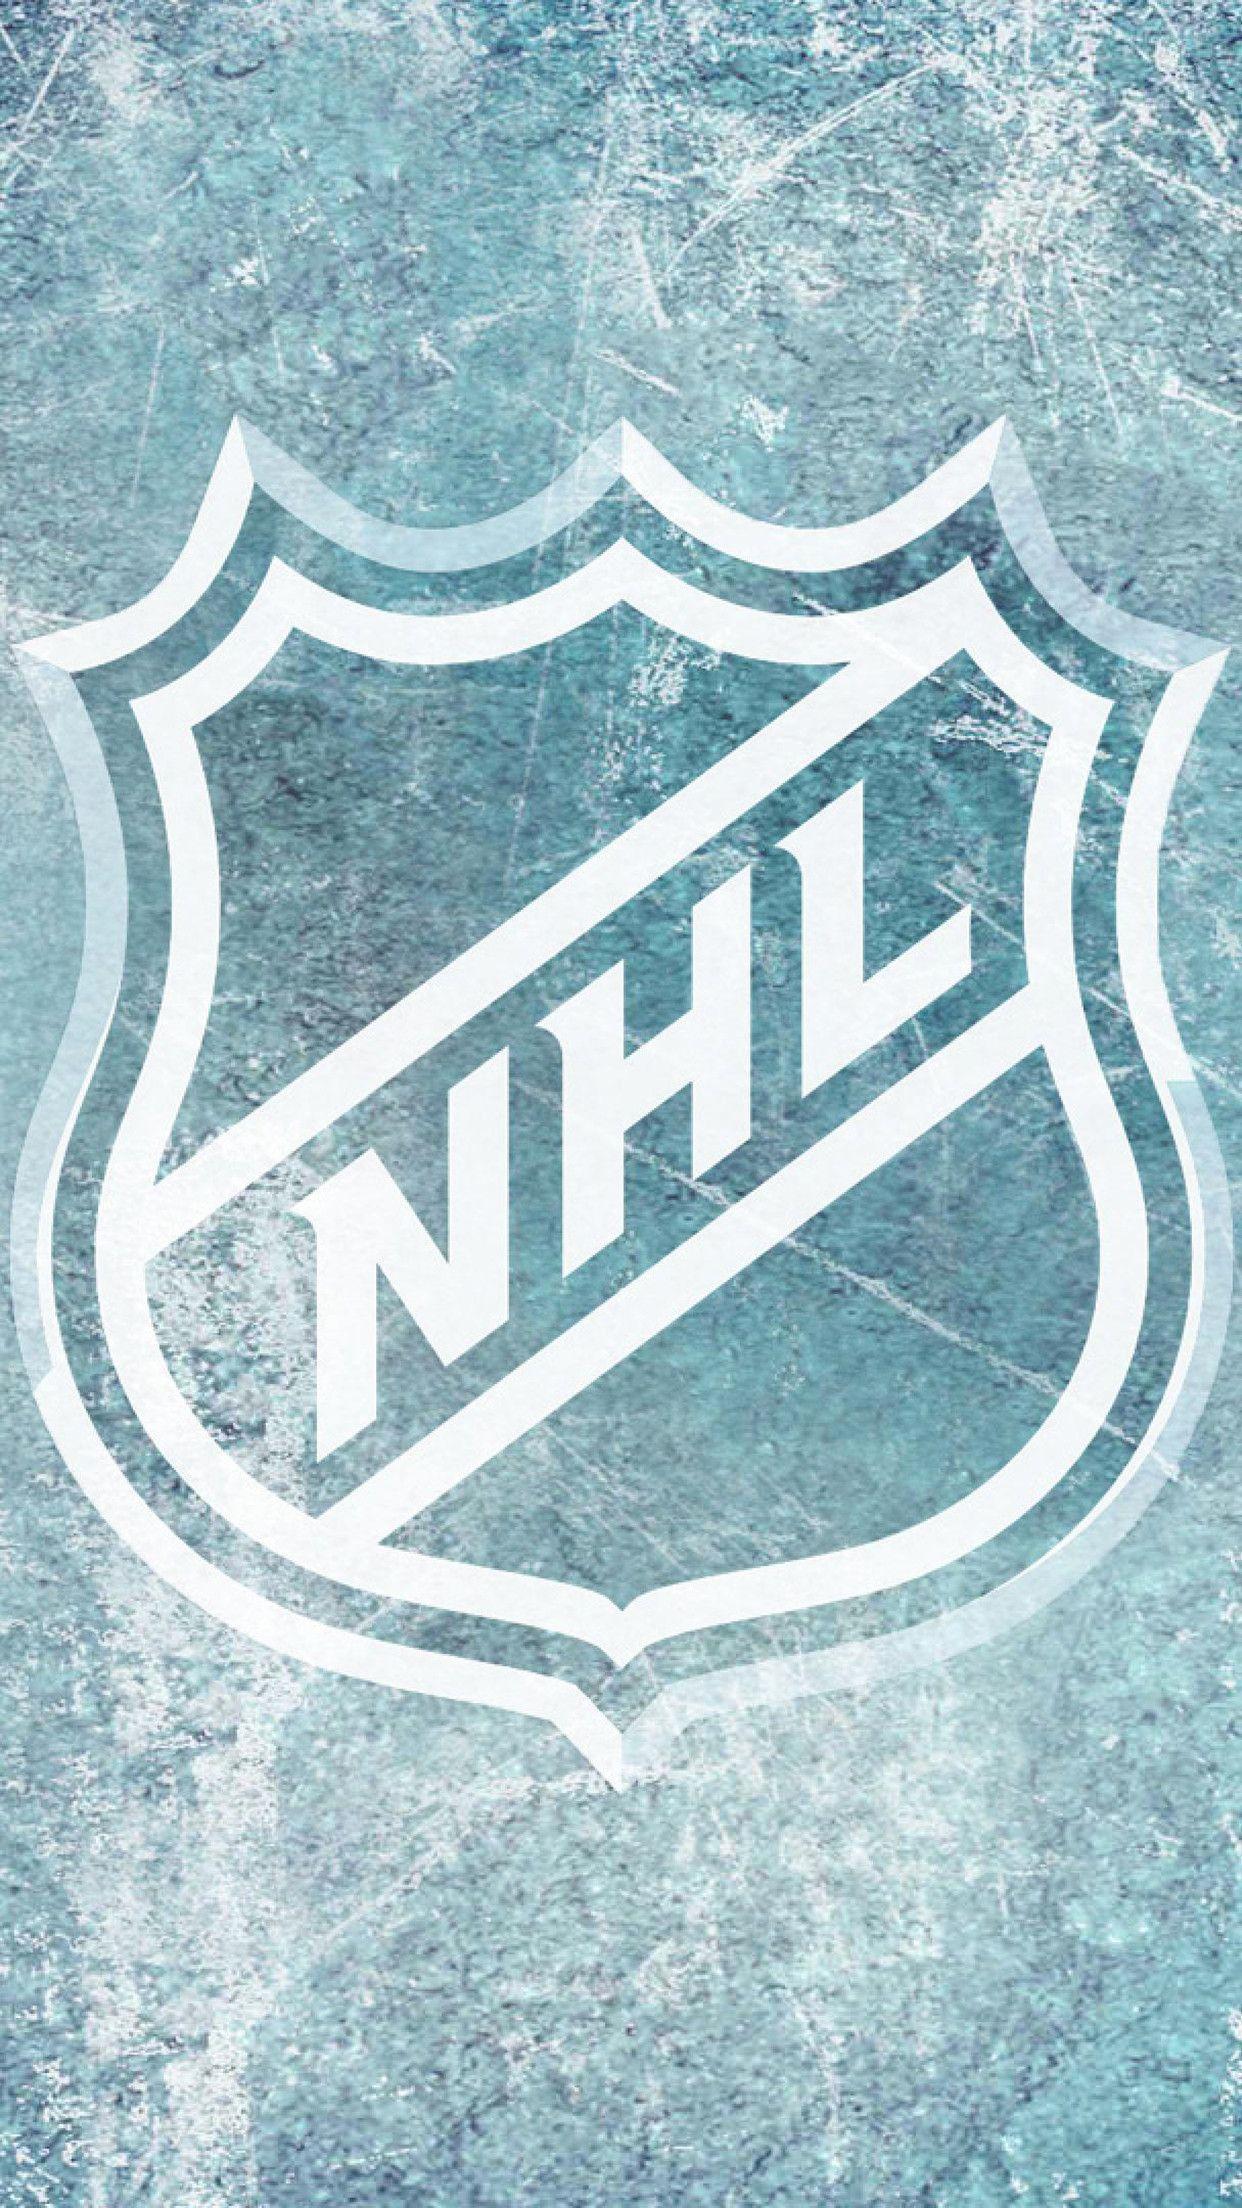 NHL 23 Hockey Game 4K Wallpaper iPhone HD Phone #2321i